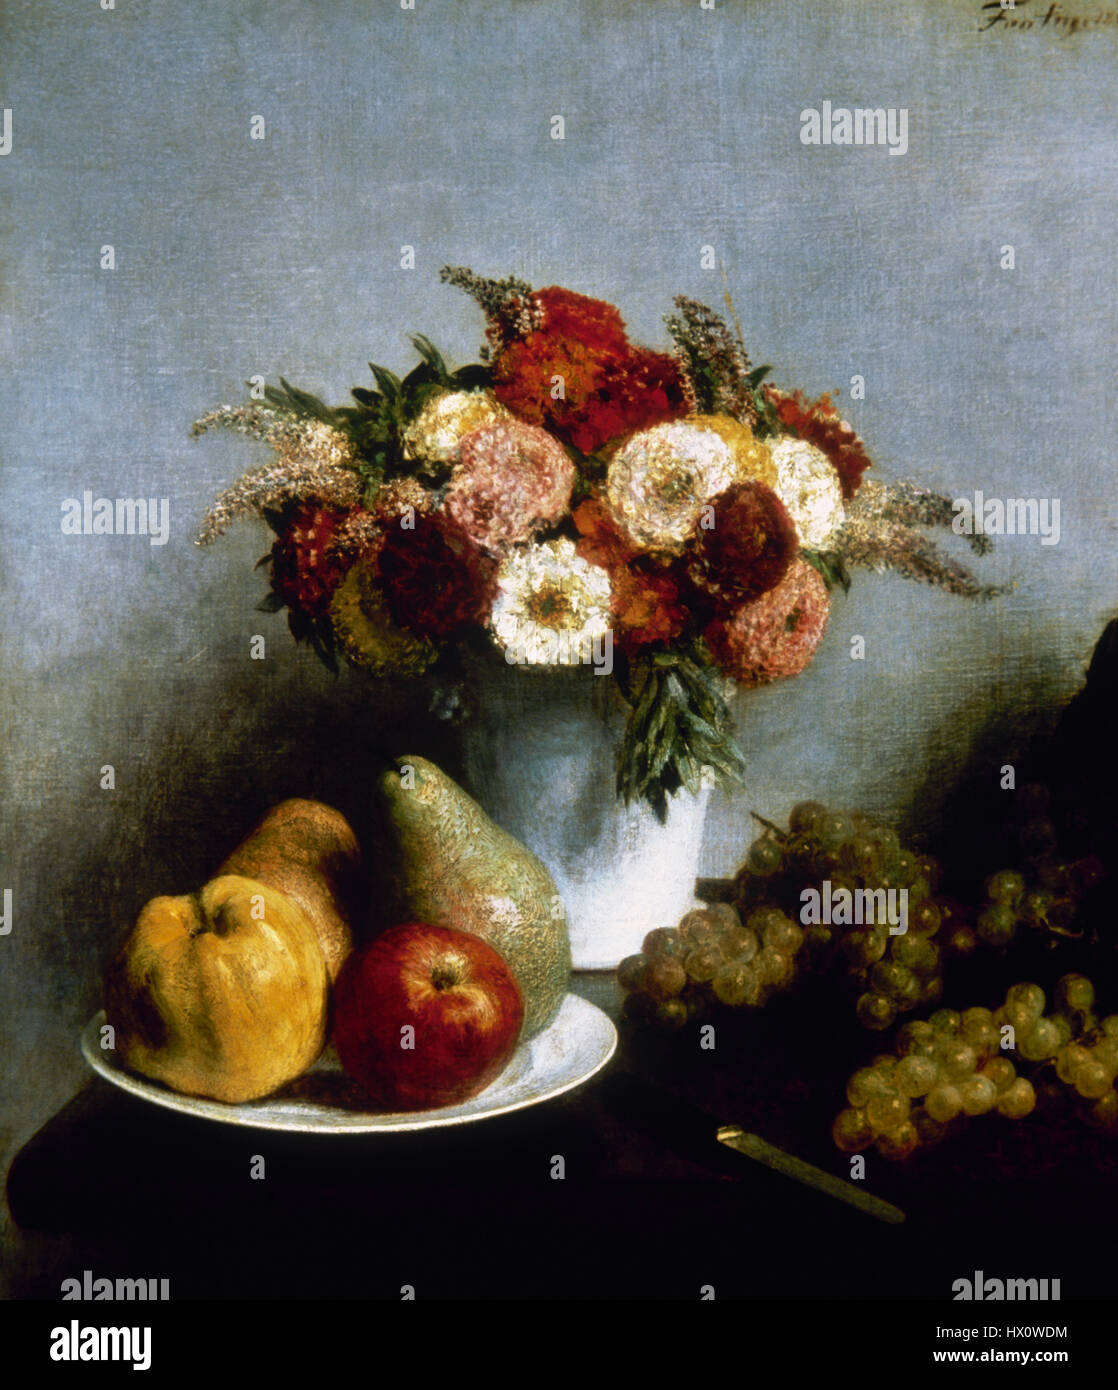 Henri Fantin-Latour (1836-1904). Le peintre français. Fleurs et fruits, 1865. Huile sur toile. Musée d'Orsay. Paris. La France. Banque D'Images